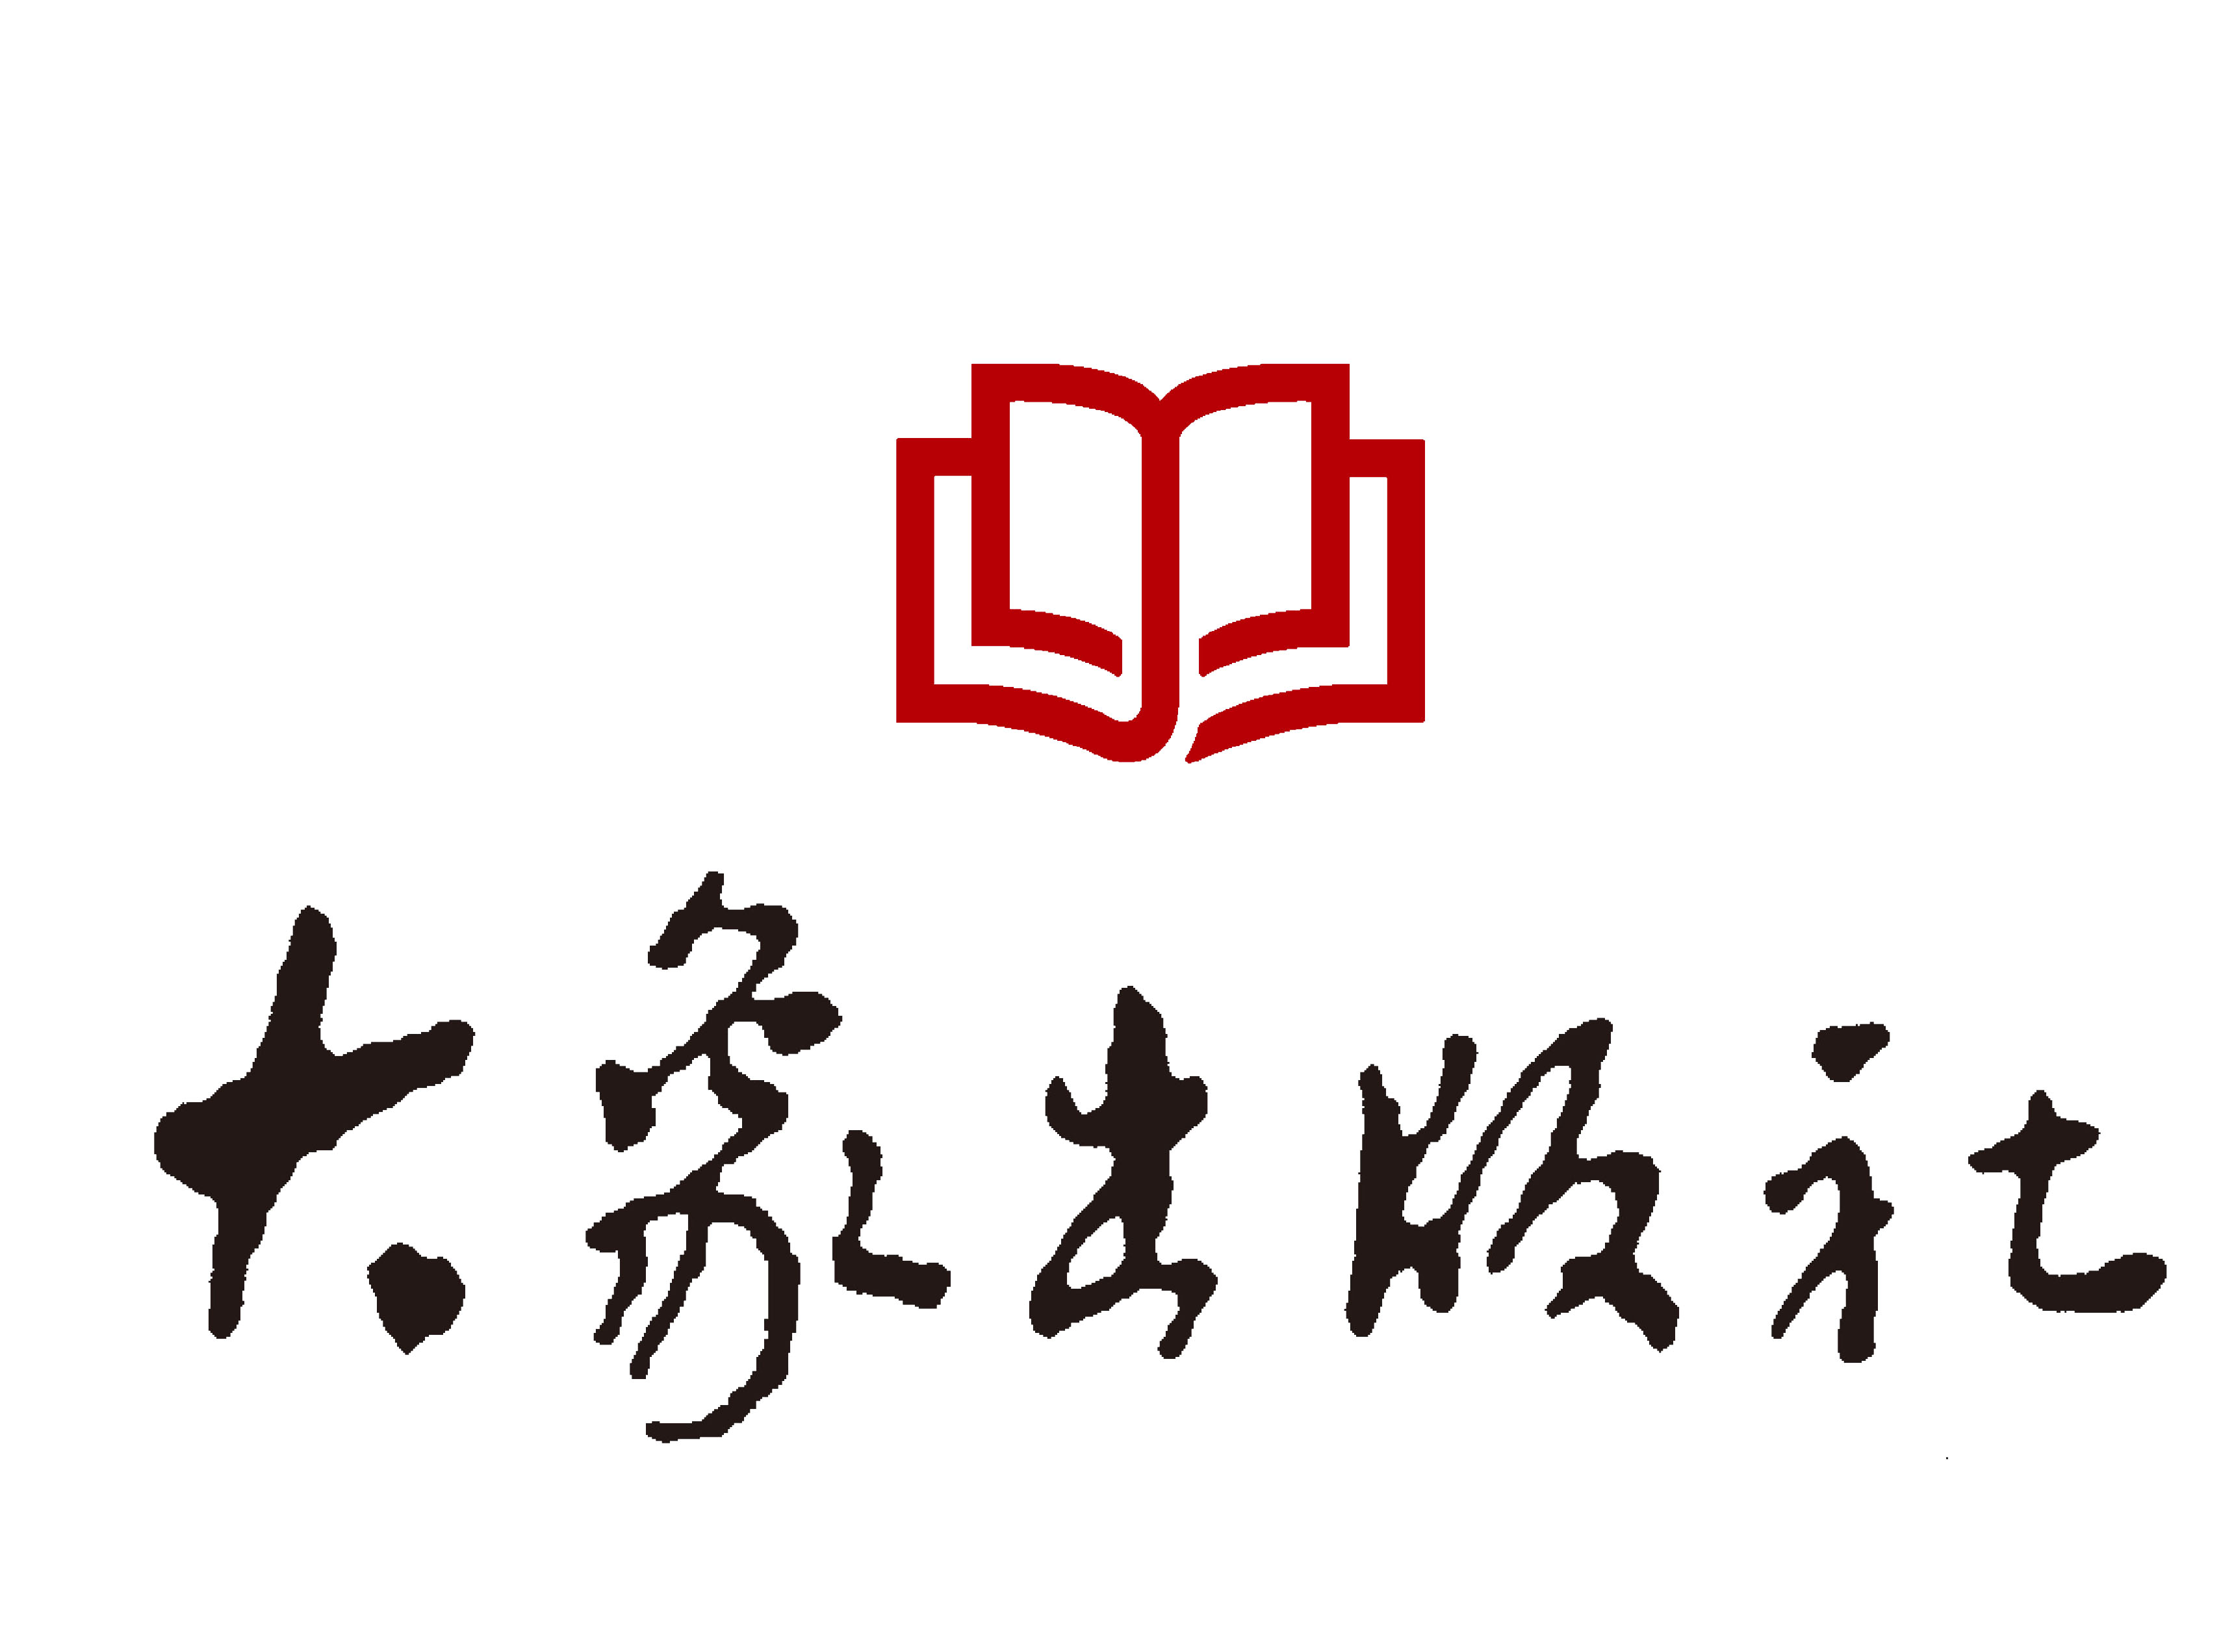 出版社竖版logo图片